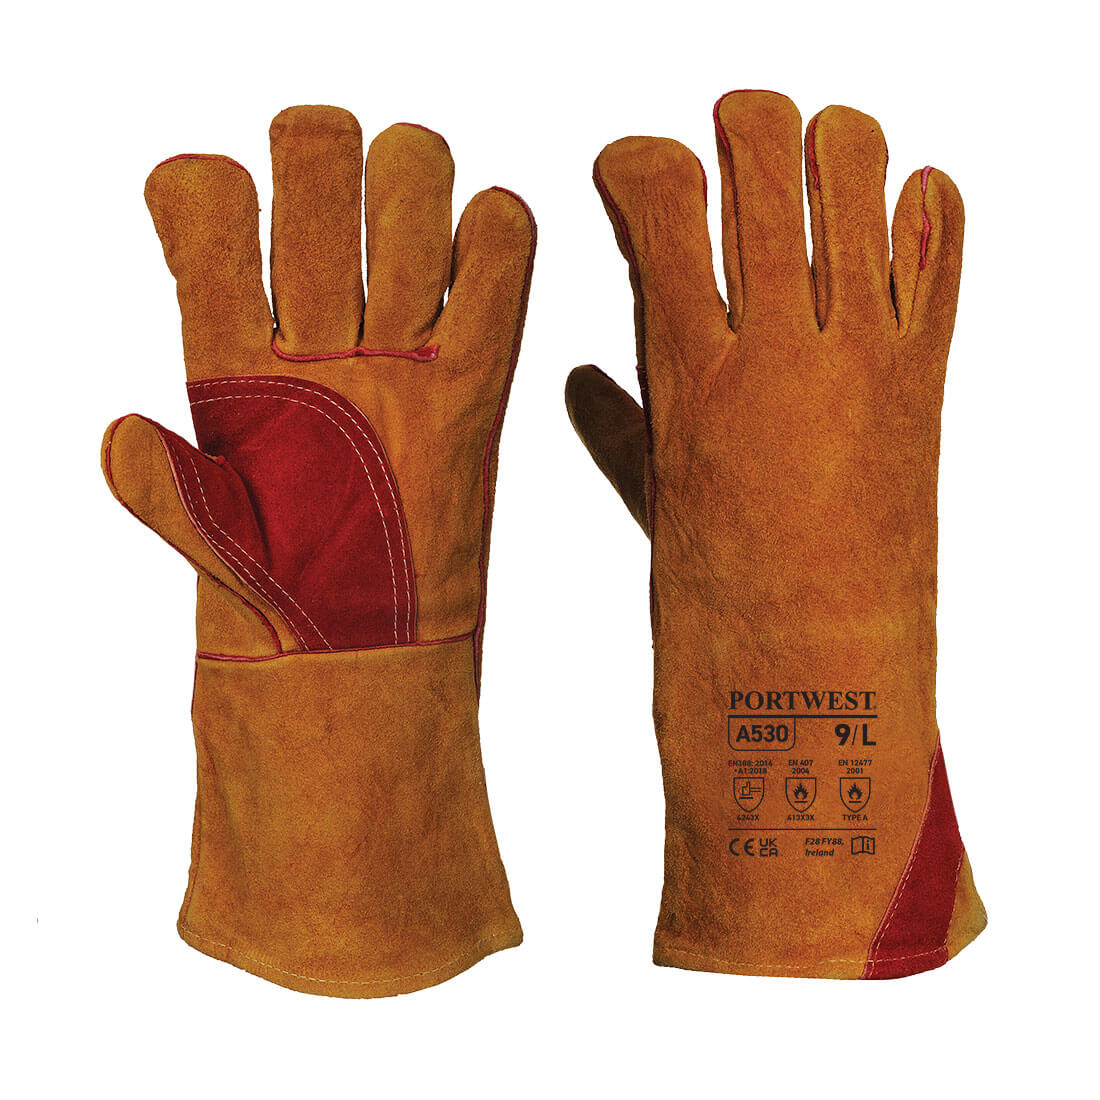 A530 Portwest® Reinforced Welding Gauntlet Gloves